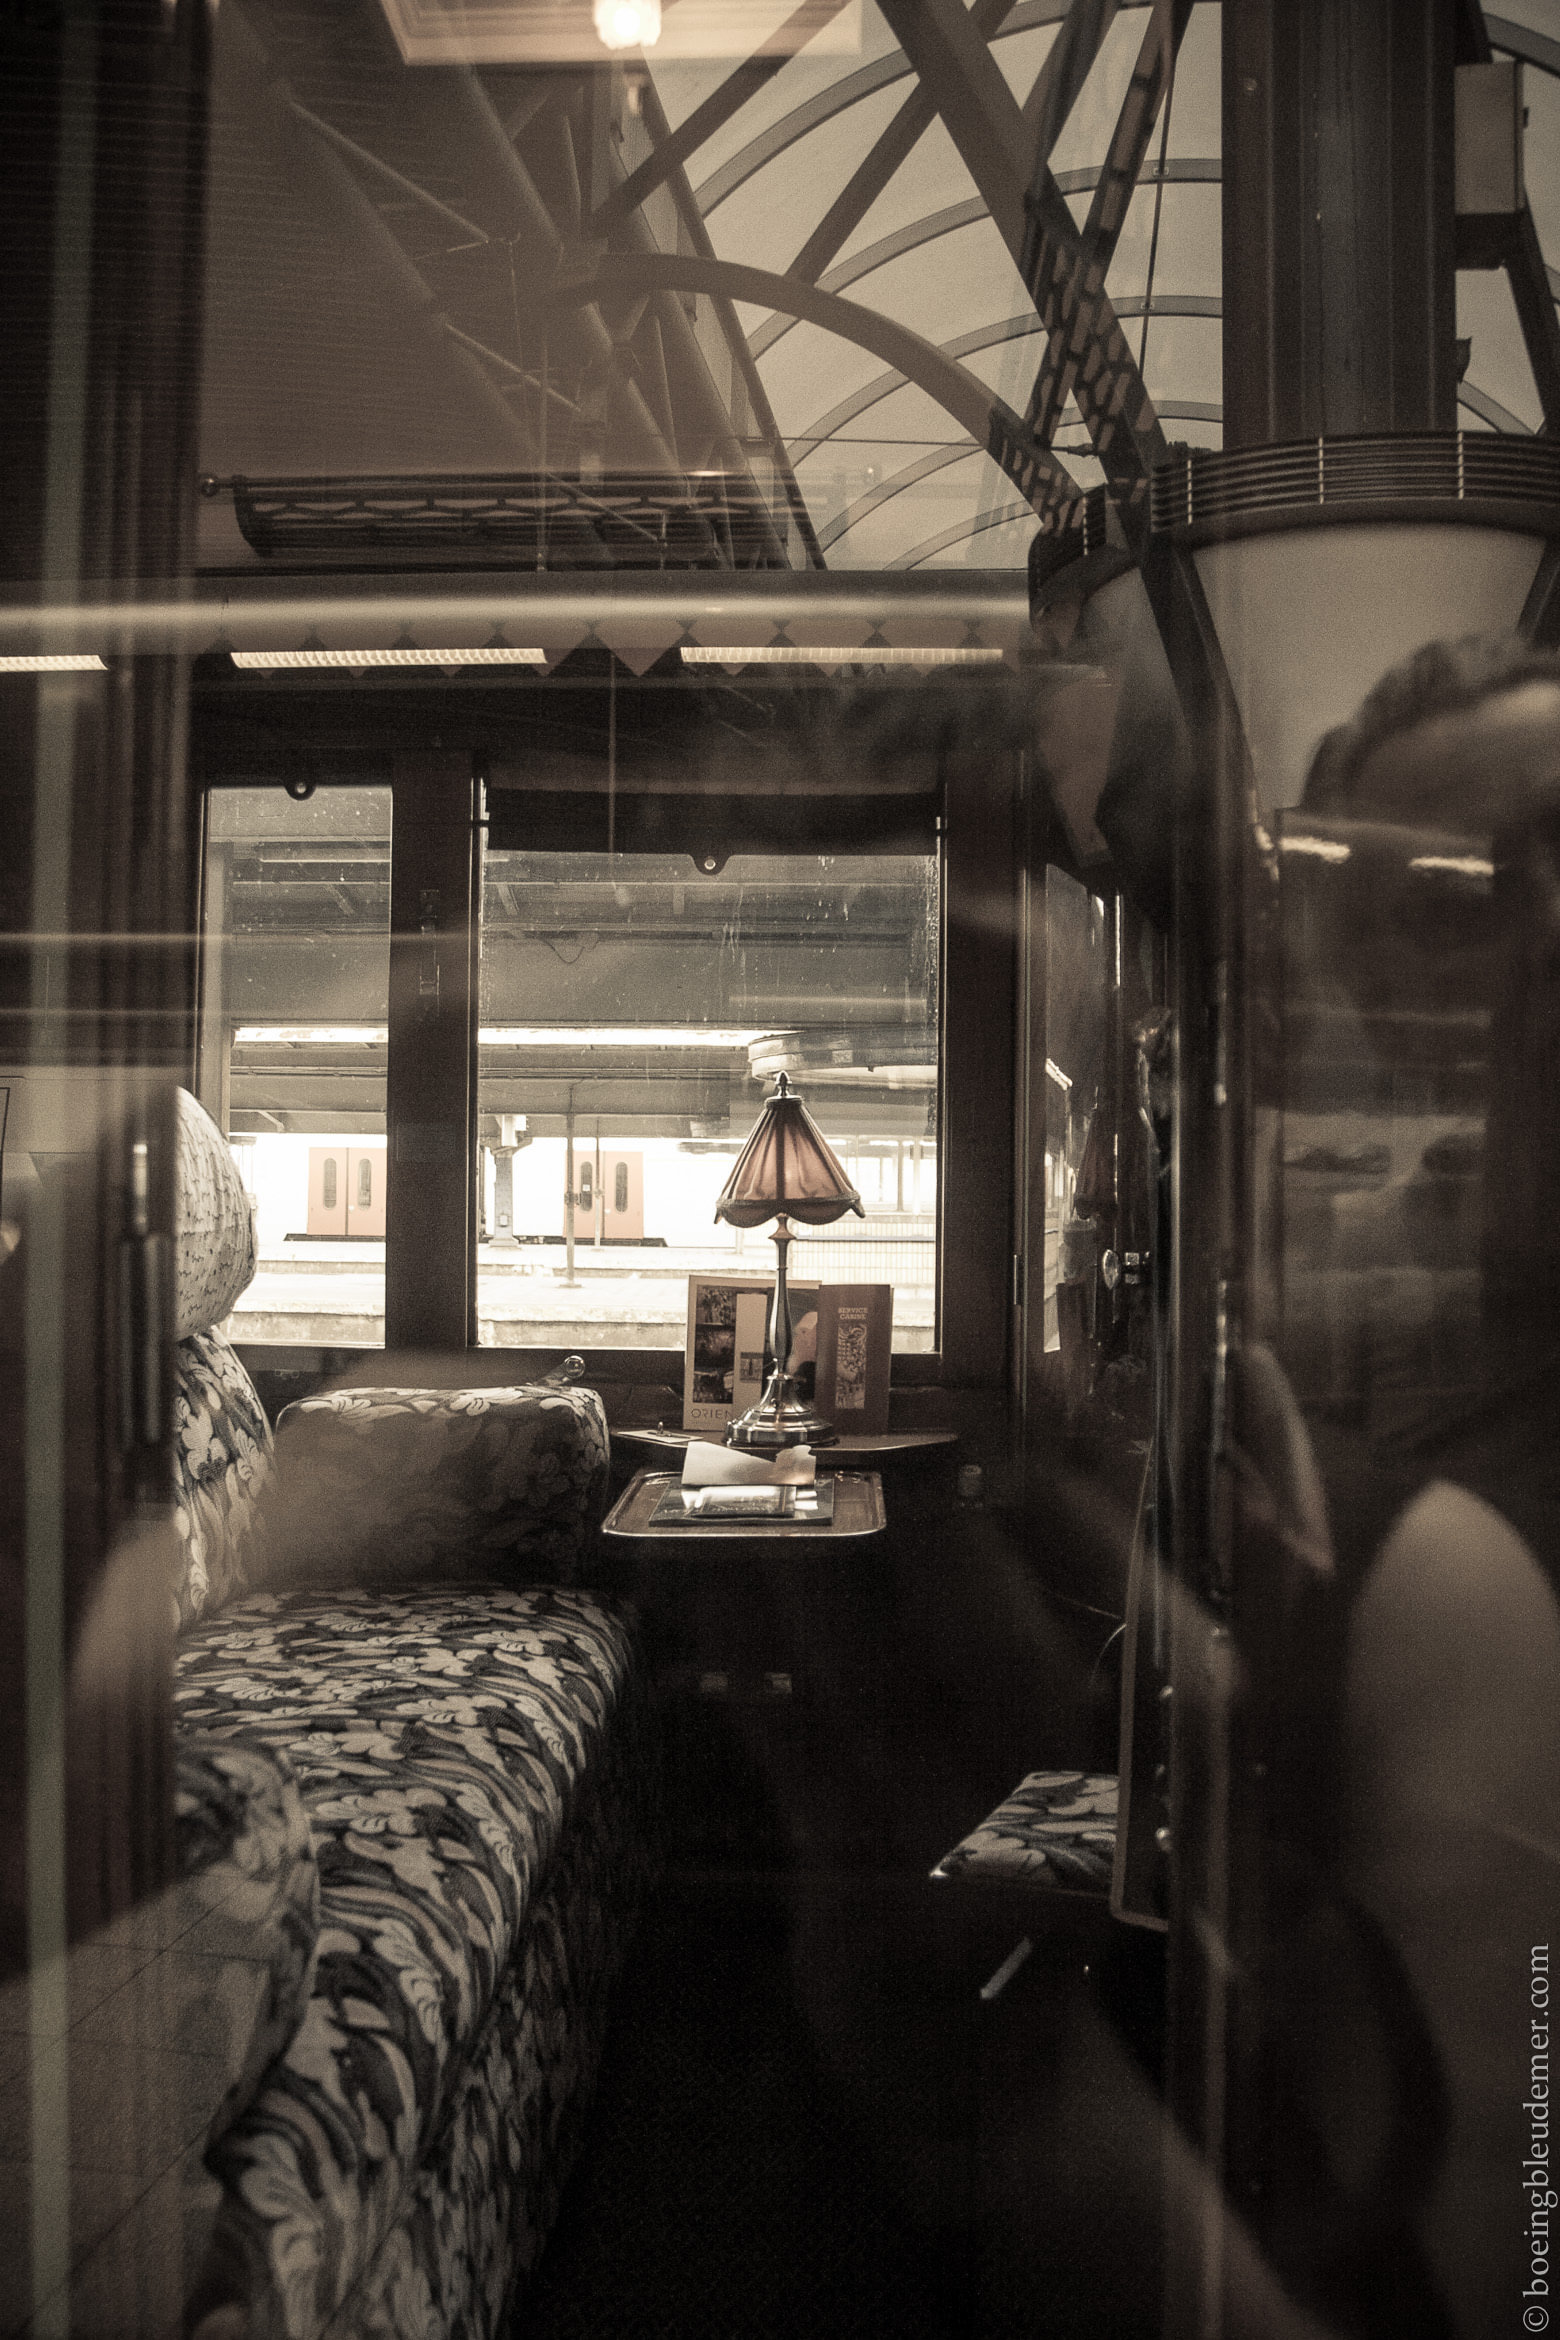 L'Orient Express à la gare de Bruxelles : wagon luxueux